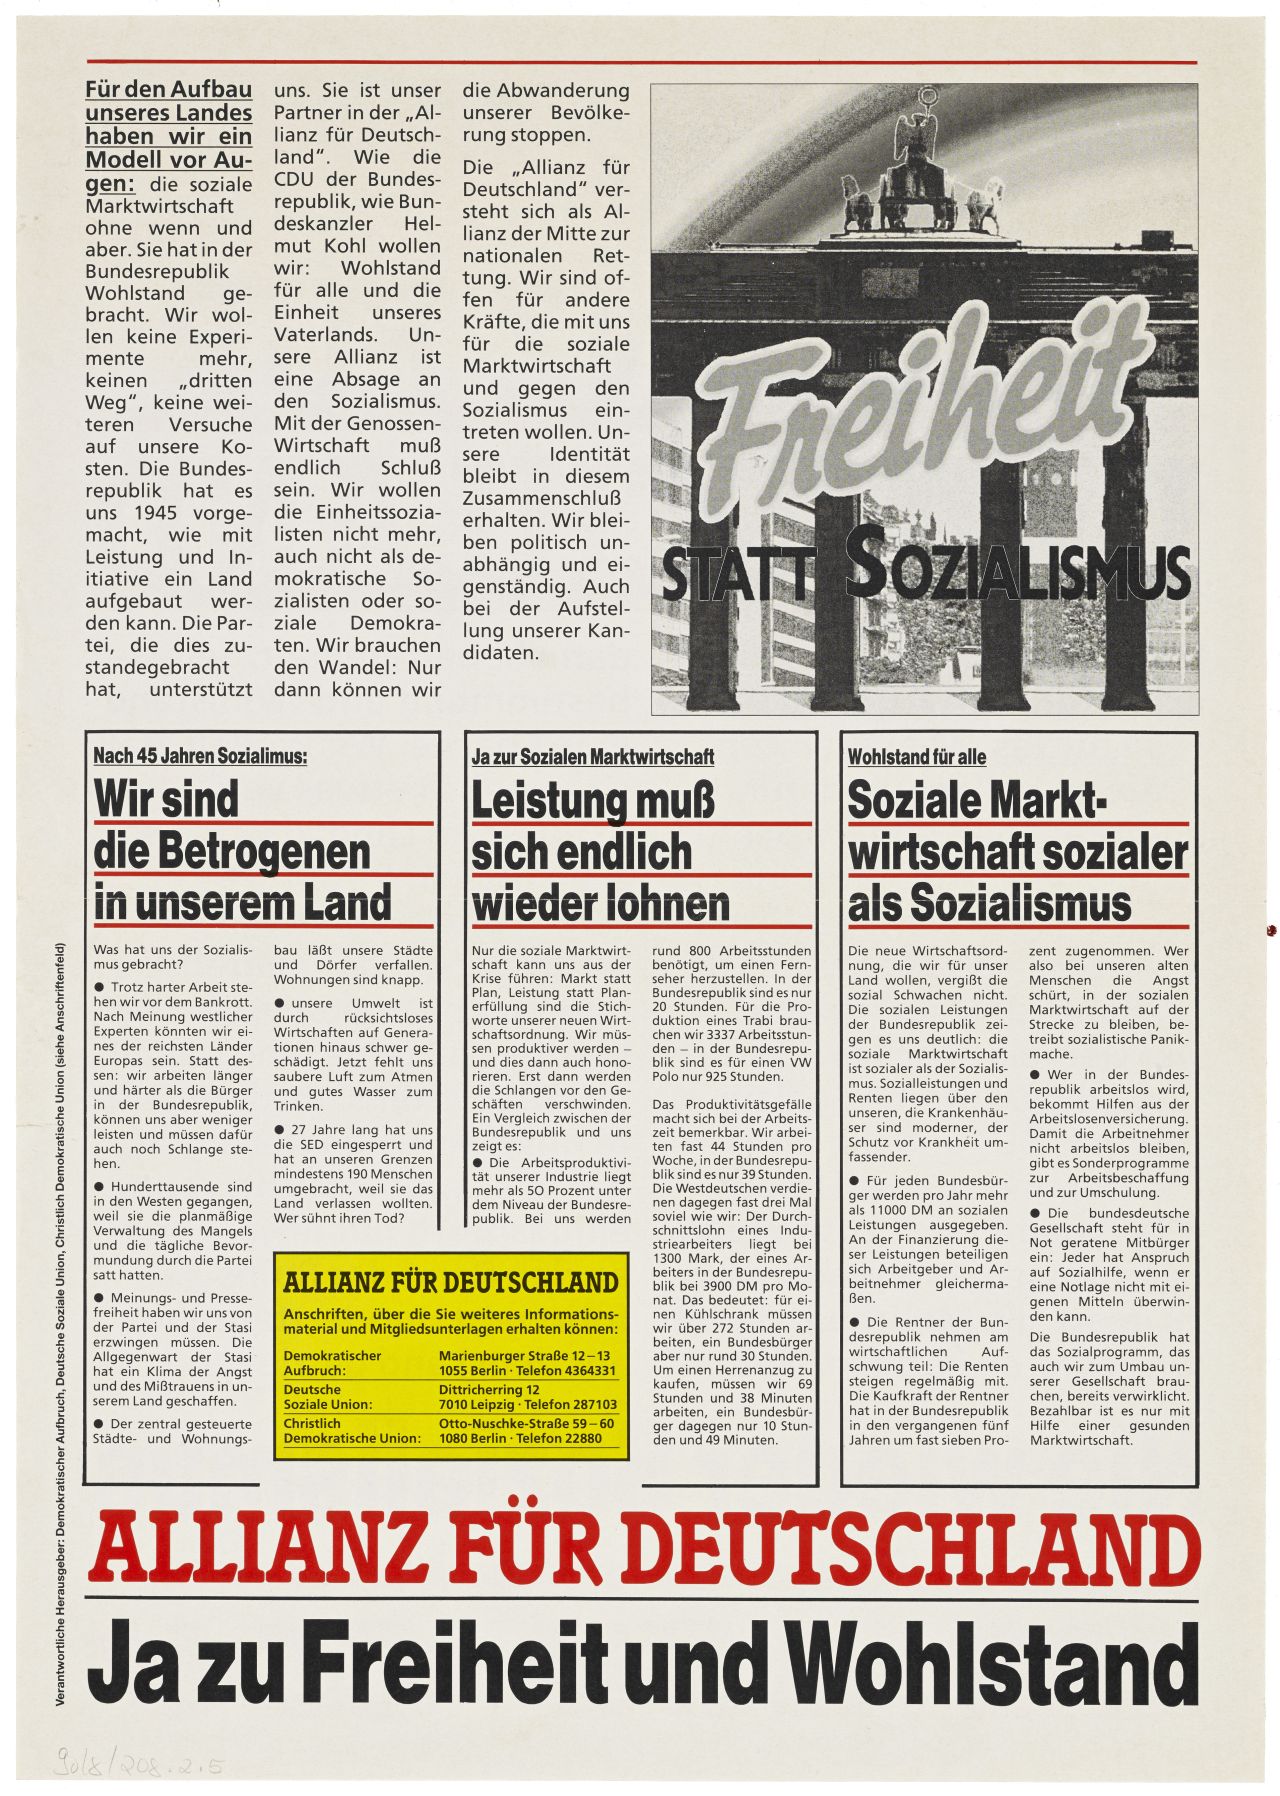 Allianz für Deutschland DA, DSU, CDU. DDR-Wahlkampf 18. März 1990. Beidseitig bedrucktes, illustriertes Flugblatt. Perspektiven über die Umgestaltung der DDR. (weißgrundig, Druck: schwarz-rot-gold)